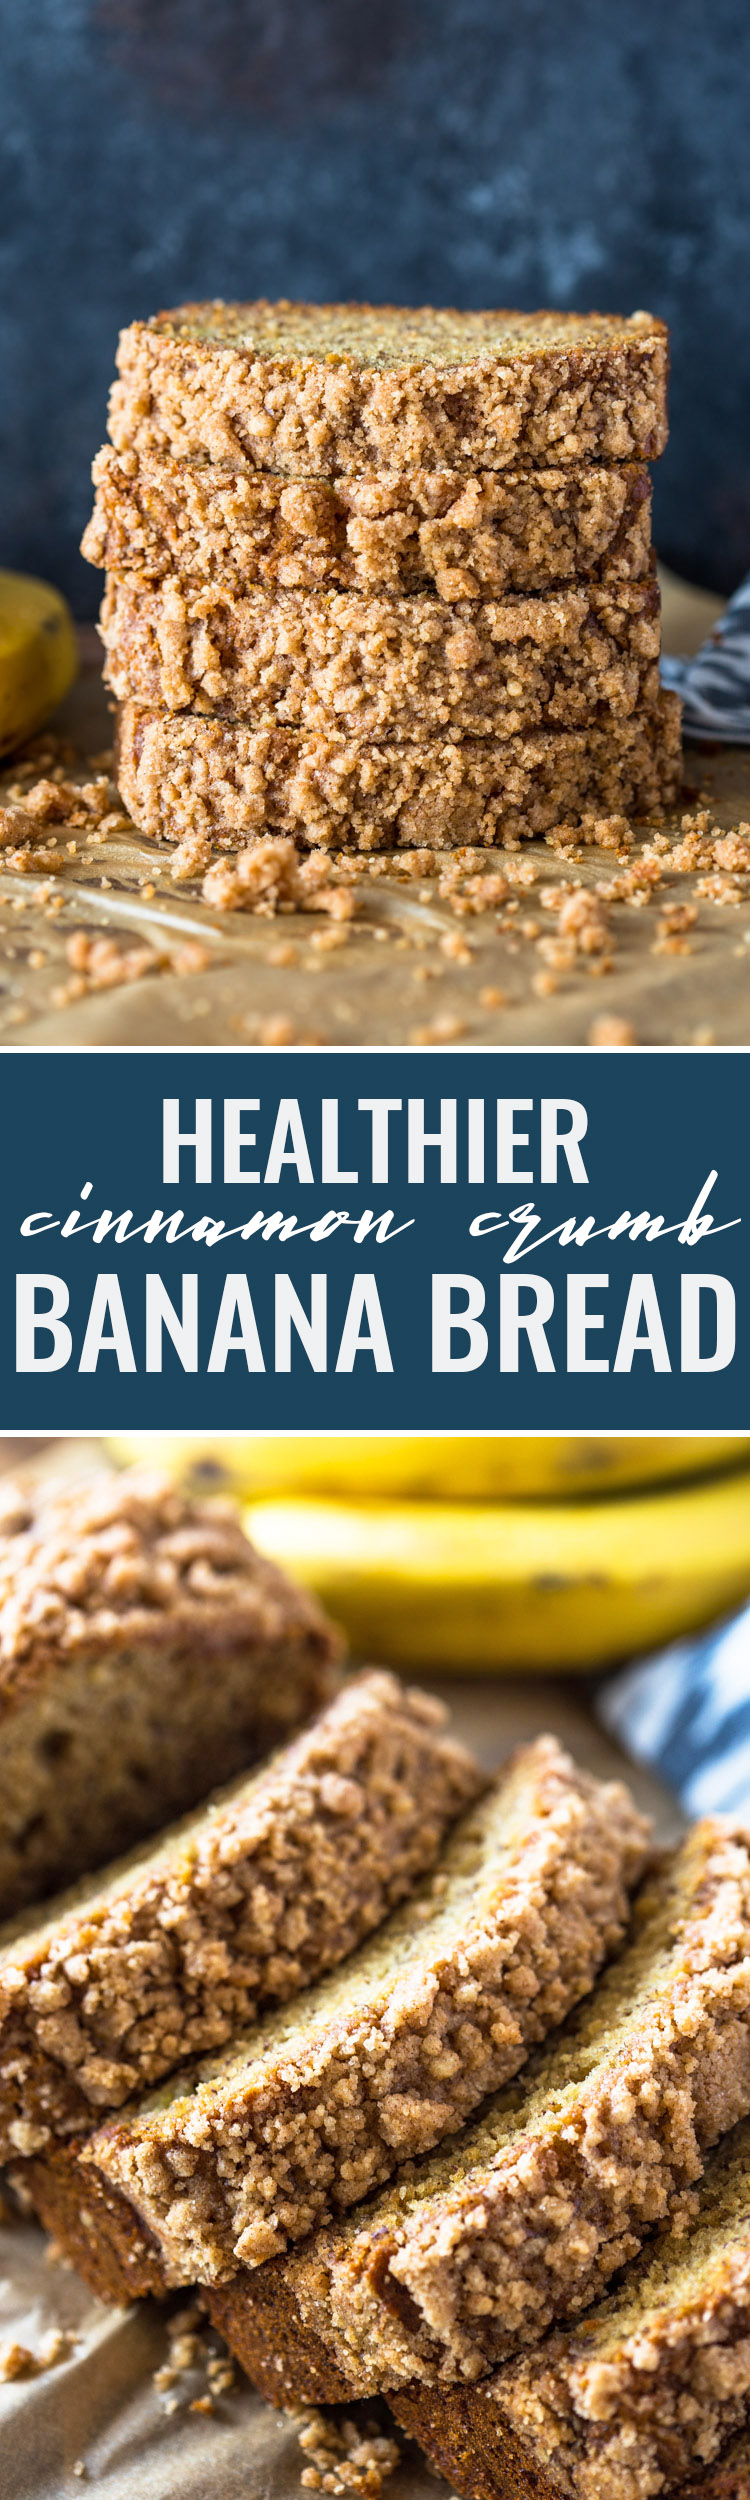 Healthier Cinnamon Crunch Banana Bread